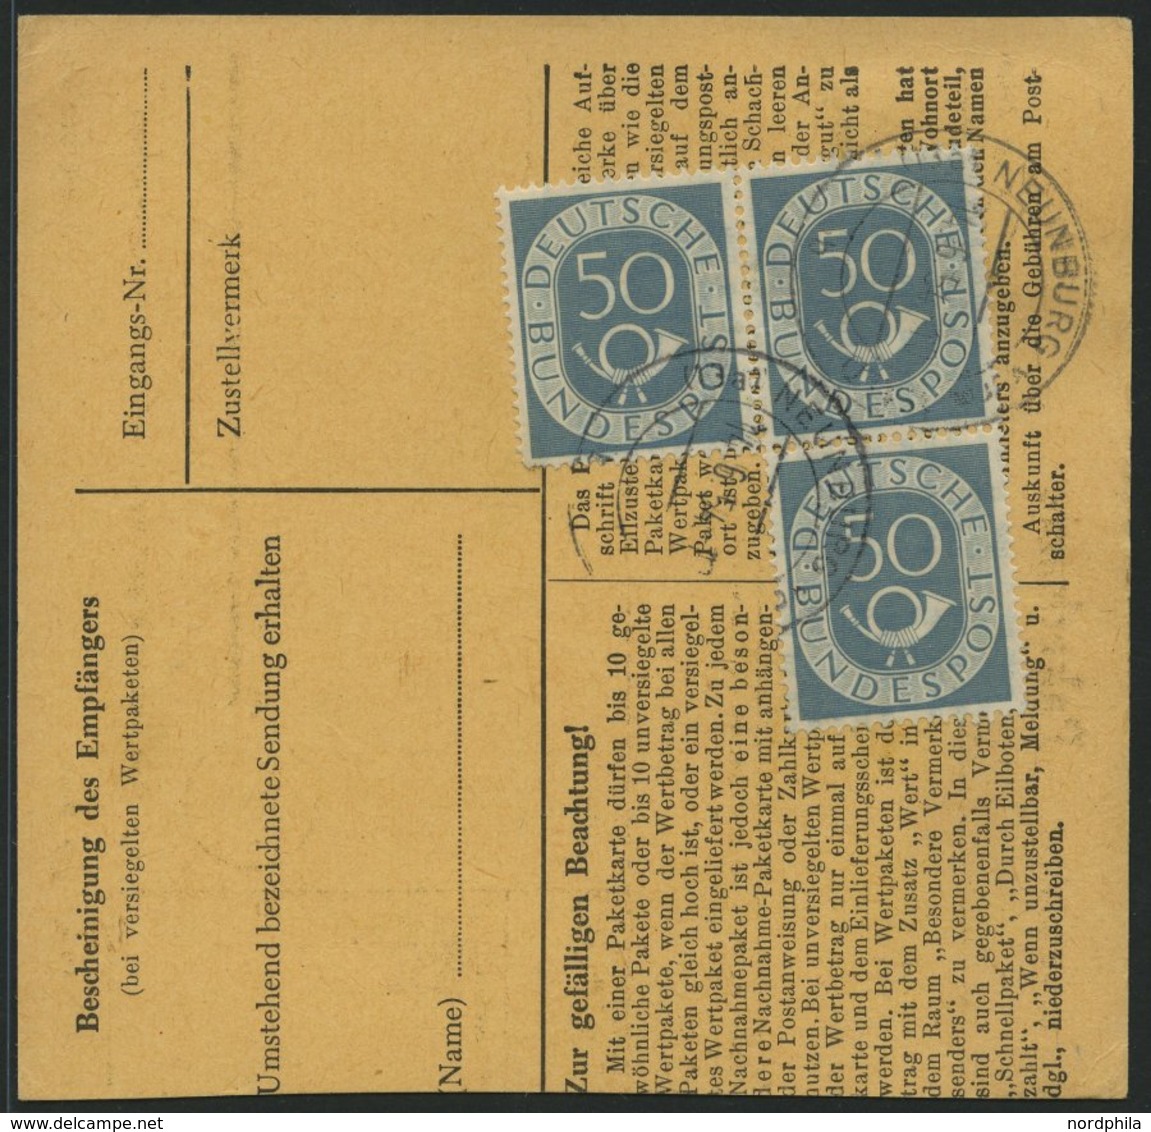 BUNDESREPUBLIK 134 Paar BRIEF, 1954, 50 Pf. Posthorn, 4x, Dabei Ein Dreierblock, Als Mehrfachfrankatur Auf Paketkarte Au - Used Stamps